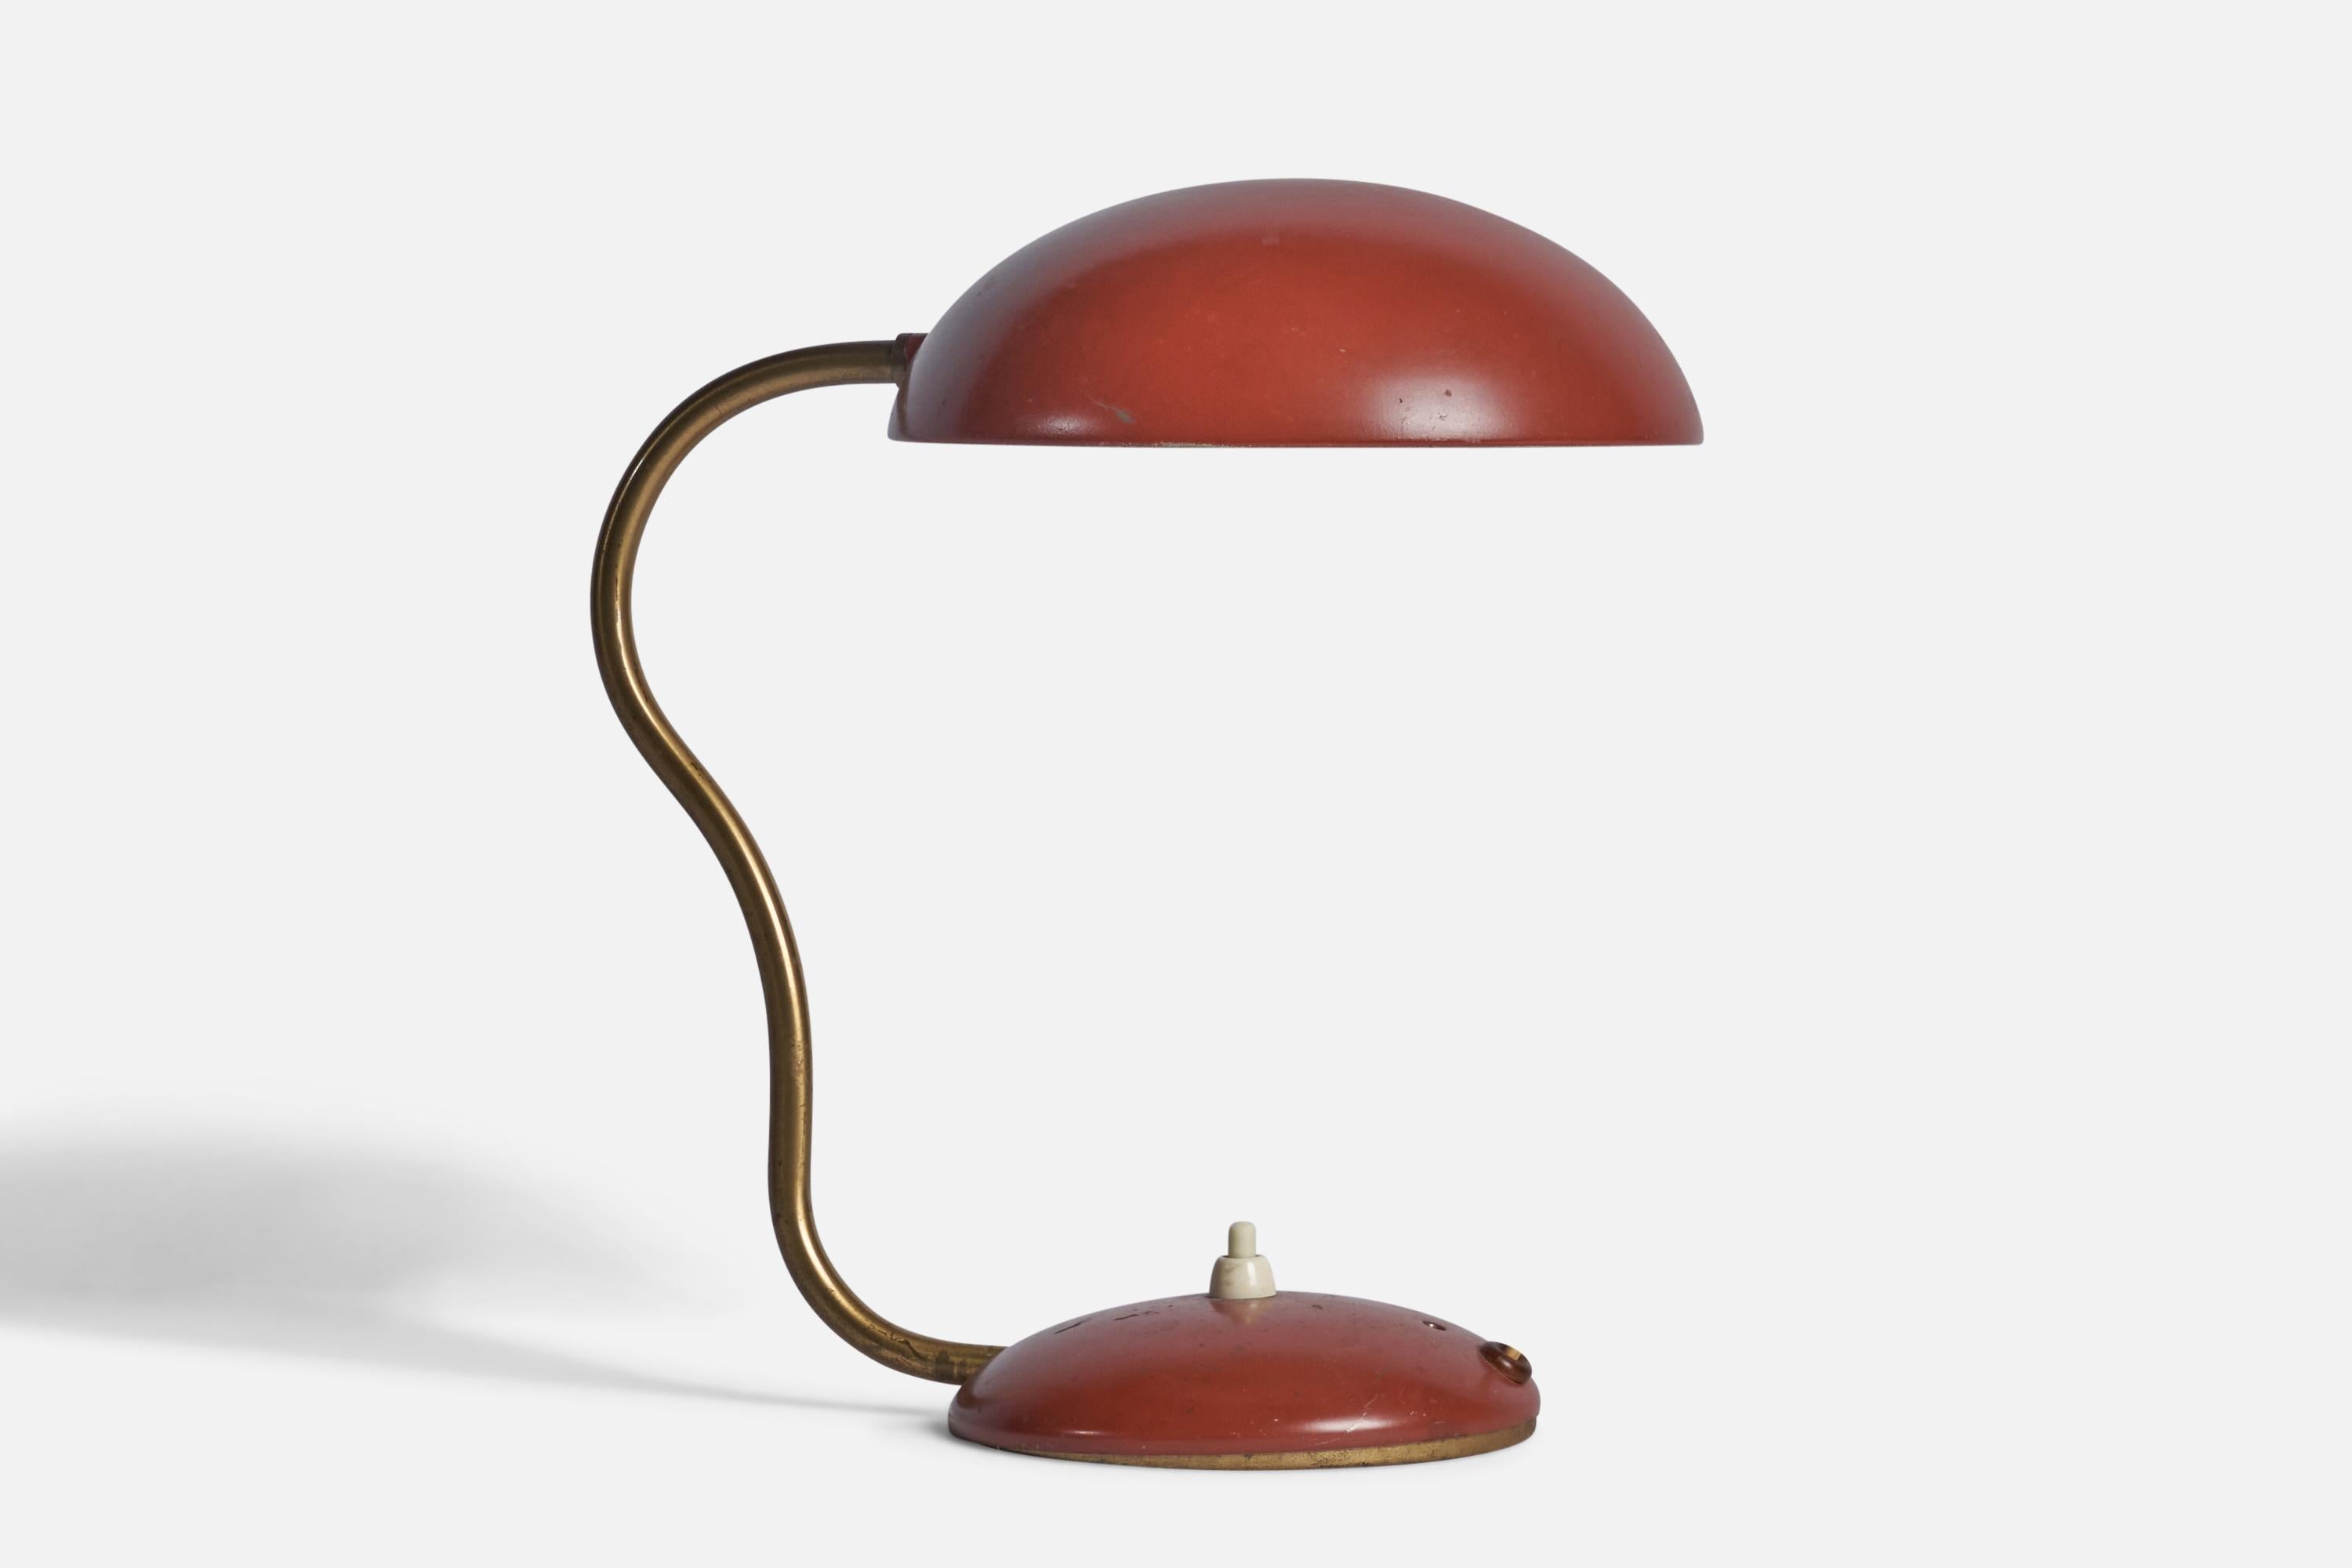 Lampe de table réglable en laiton et métal laqué rouge, conçue et produite en Suède, années 1940.

Dimensions globales (pouces) : 11